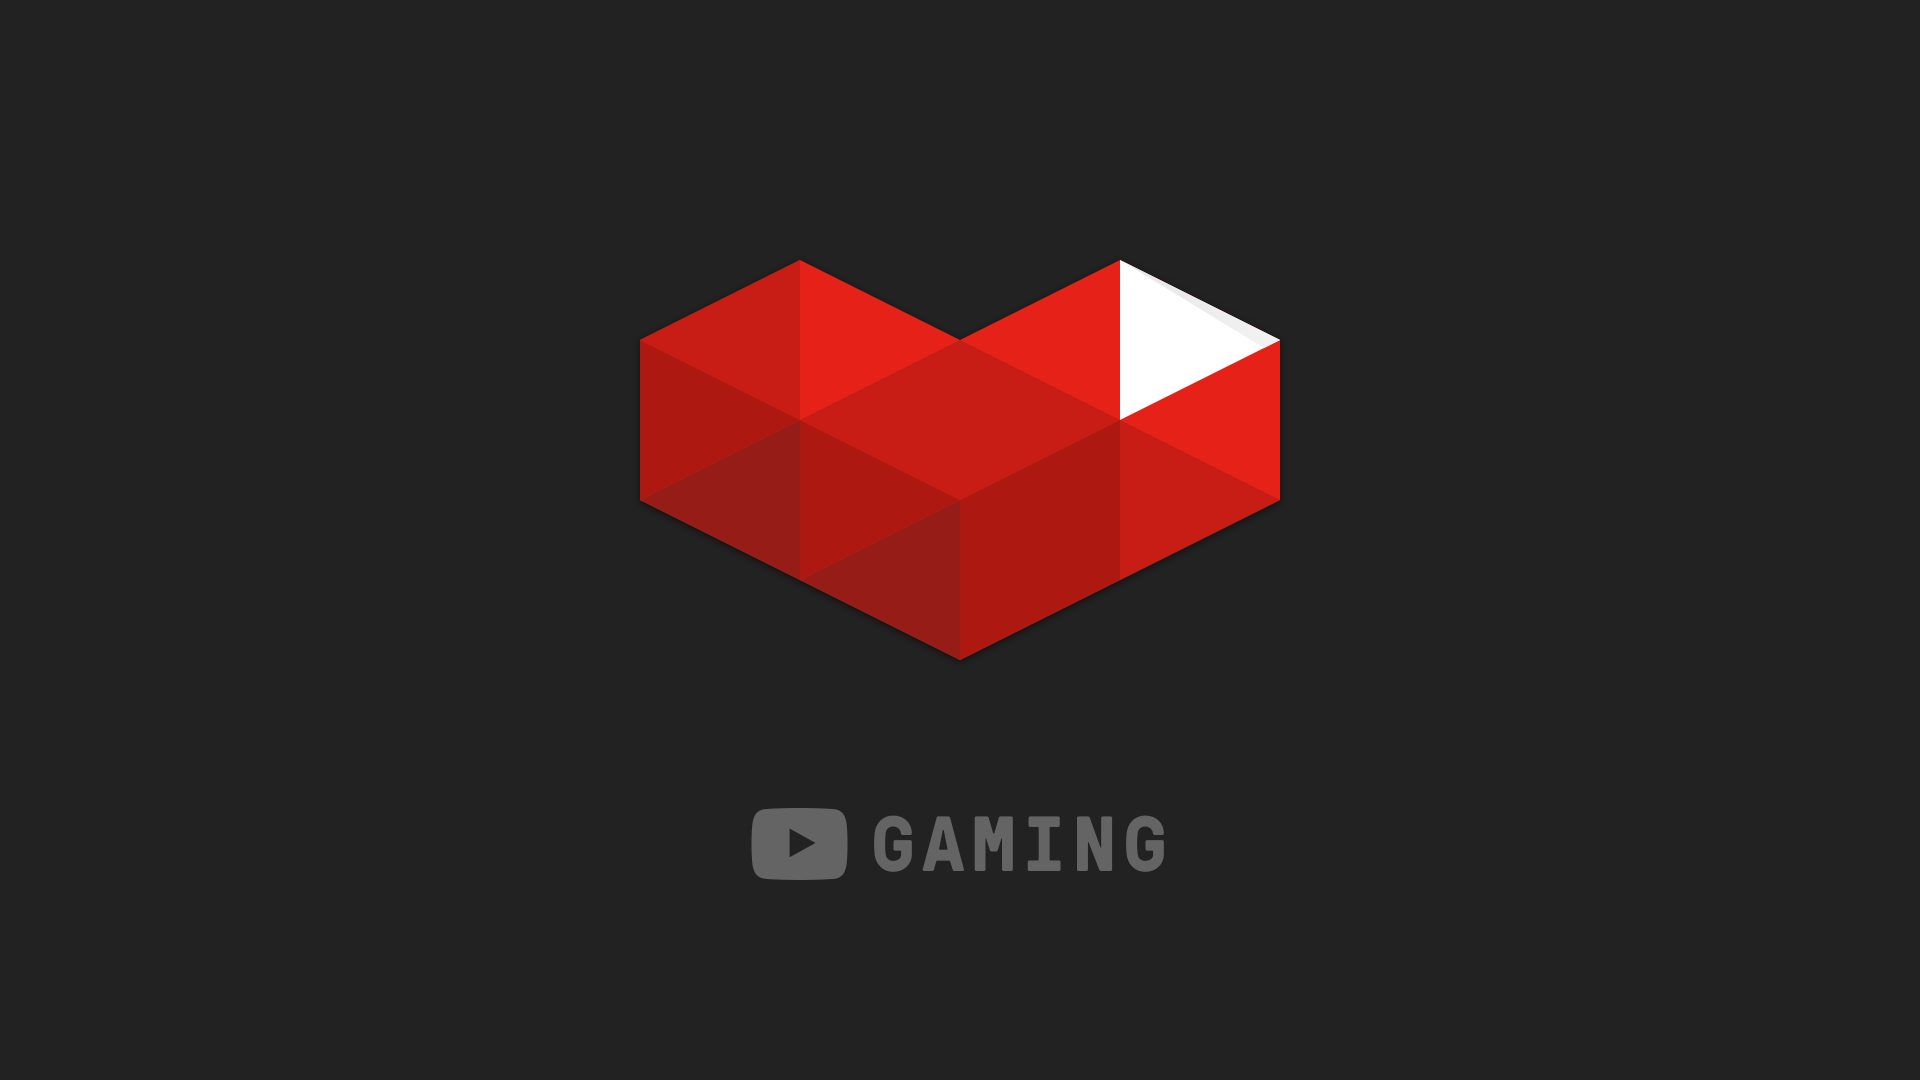 YouTube Gaming logo 1920